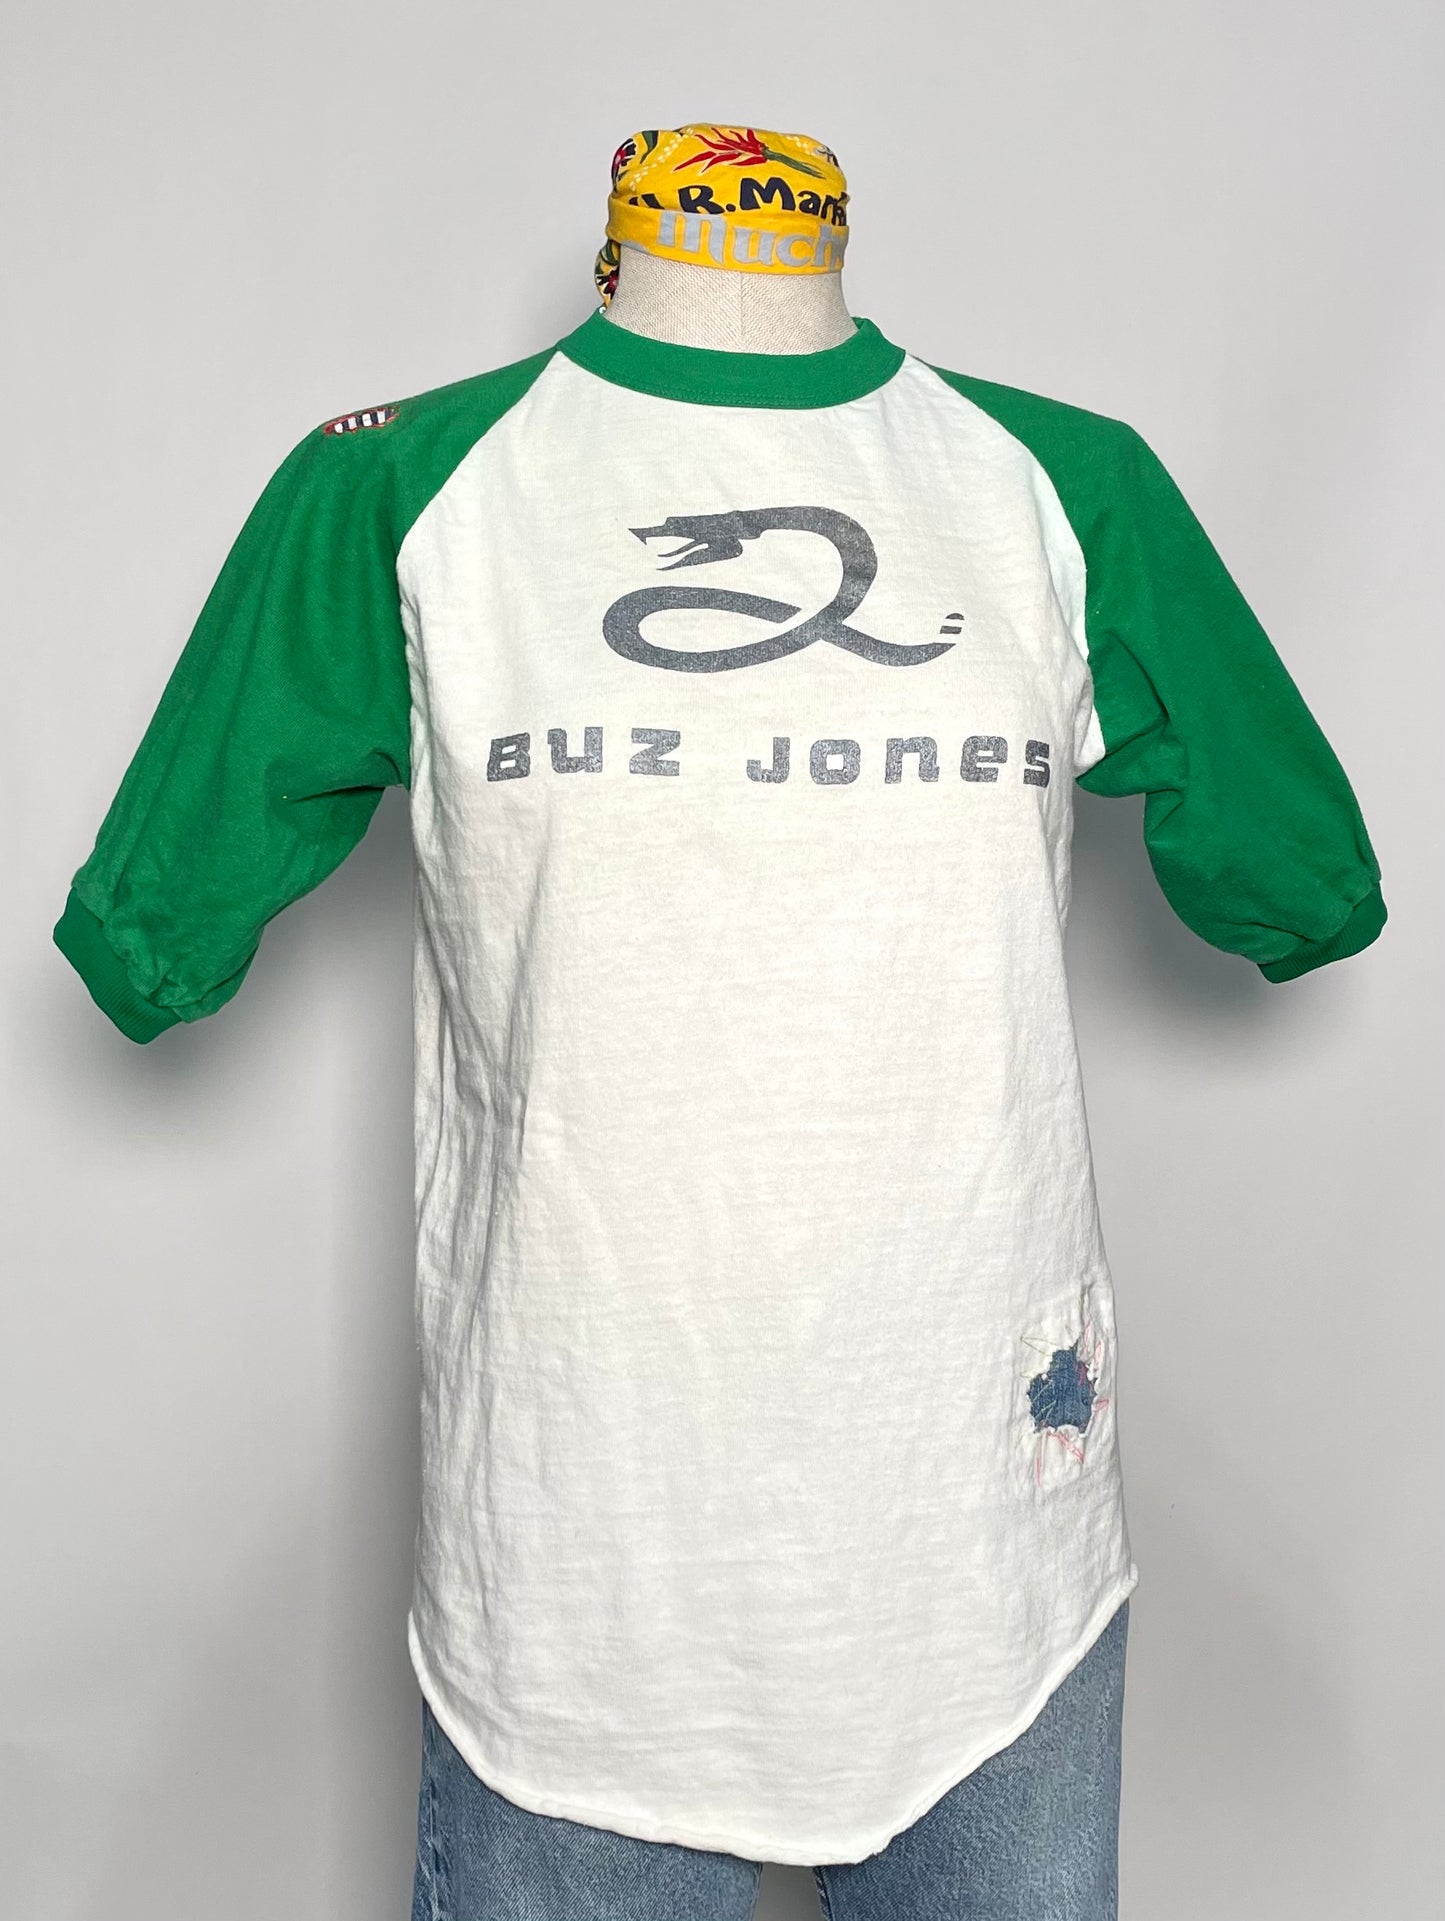 1980s 100% Cotton raglan baseball tee shirt